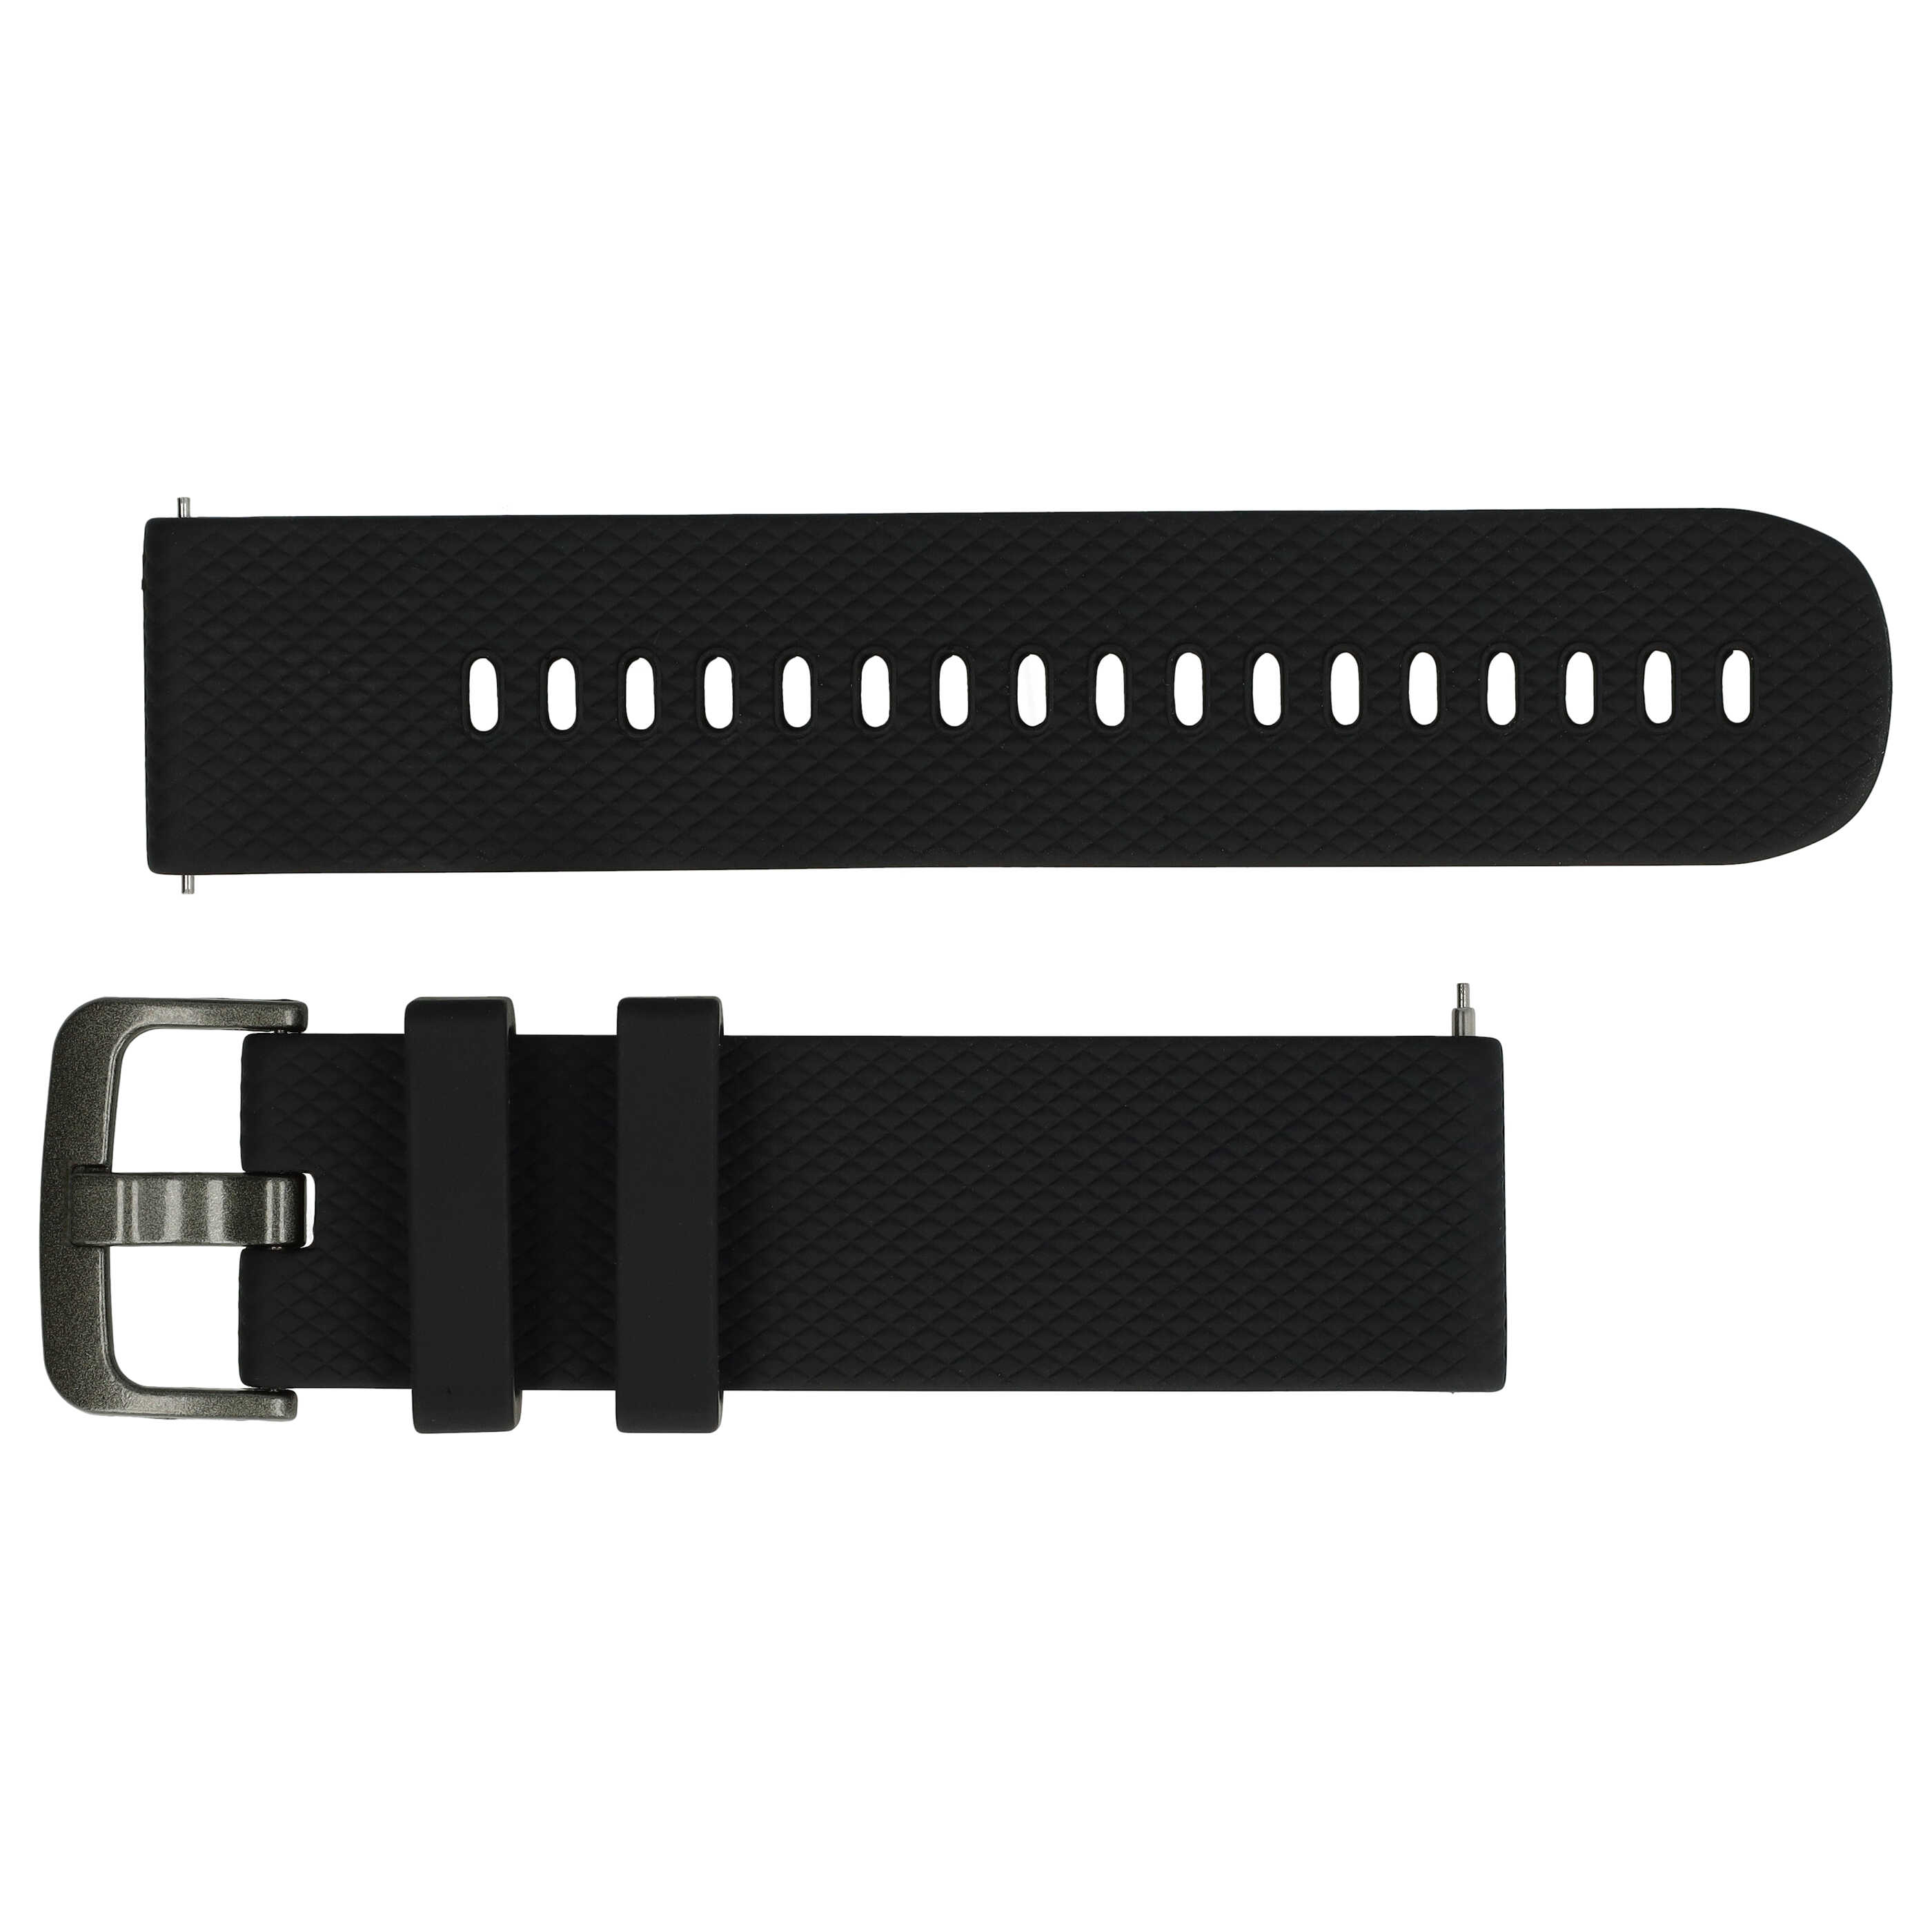 correa S para Samsung Galaxy Watch smartwatch - hasta 232 mm perímetro de muñeca, silicona, negro